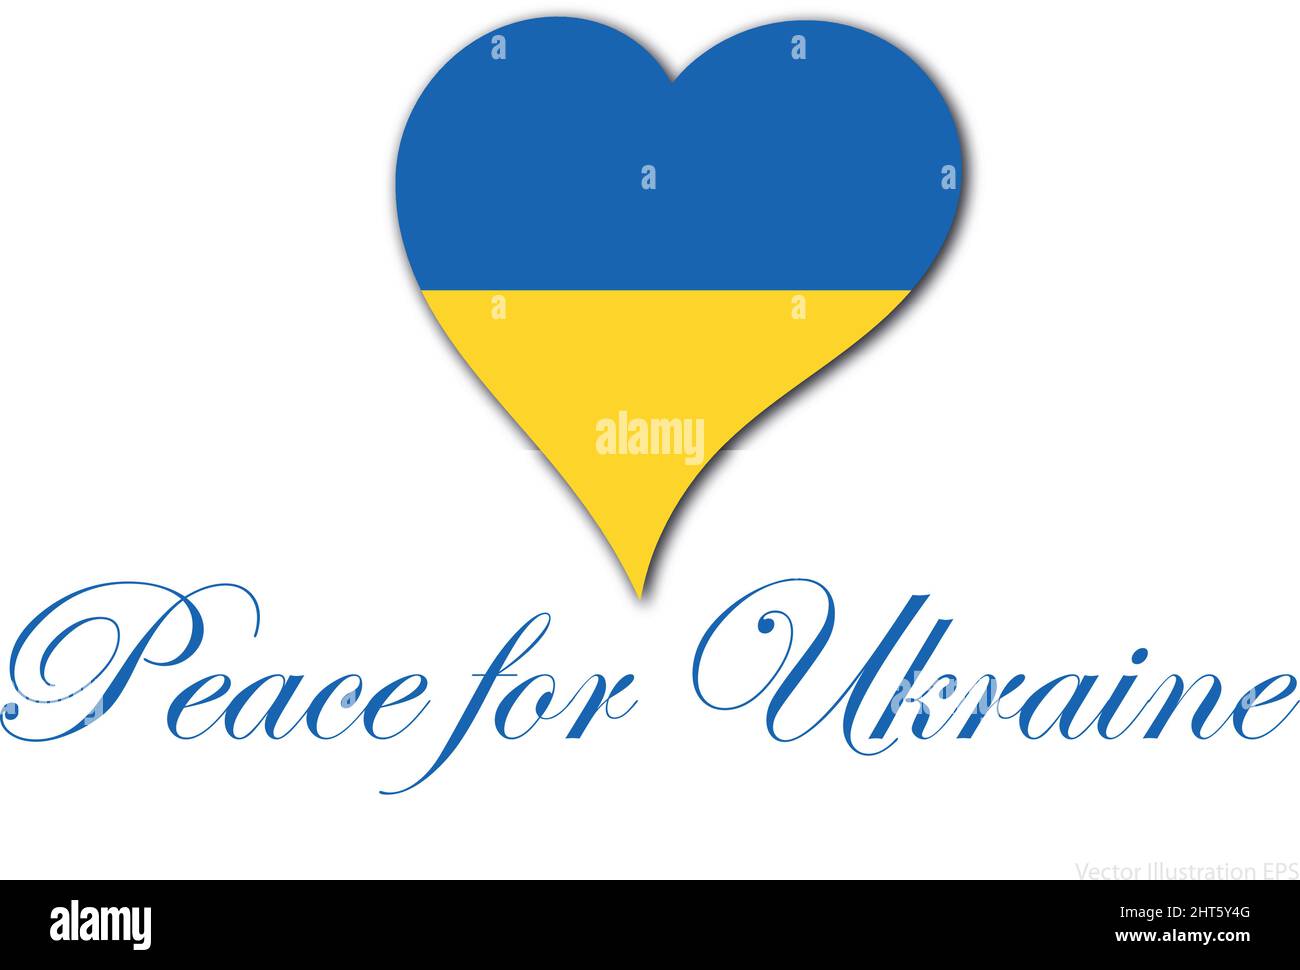 Herz in den Farben der ukrainischen Flagge mit dem Text Frieden für die ukraine in gebogener Schrift. Vektorgrafik Stock Vektor